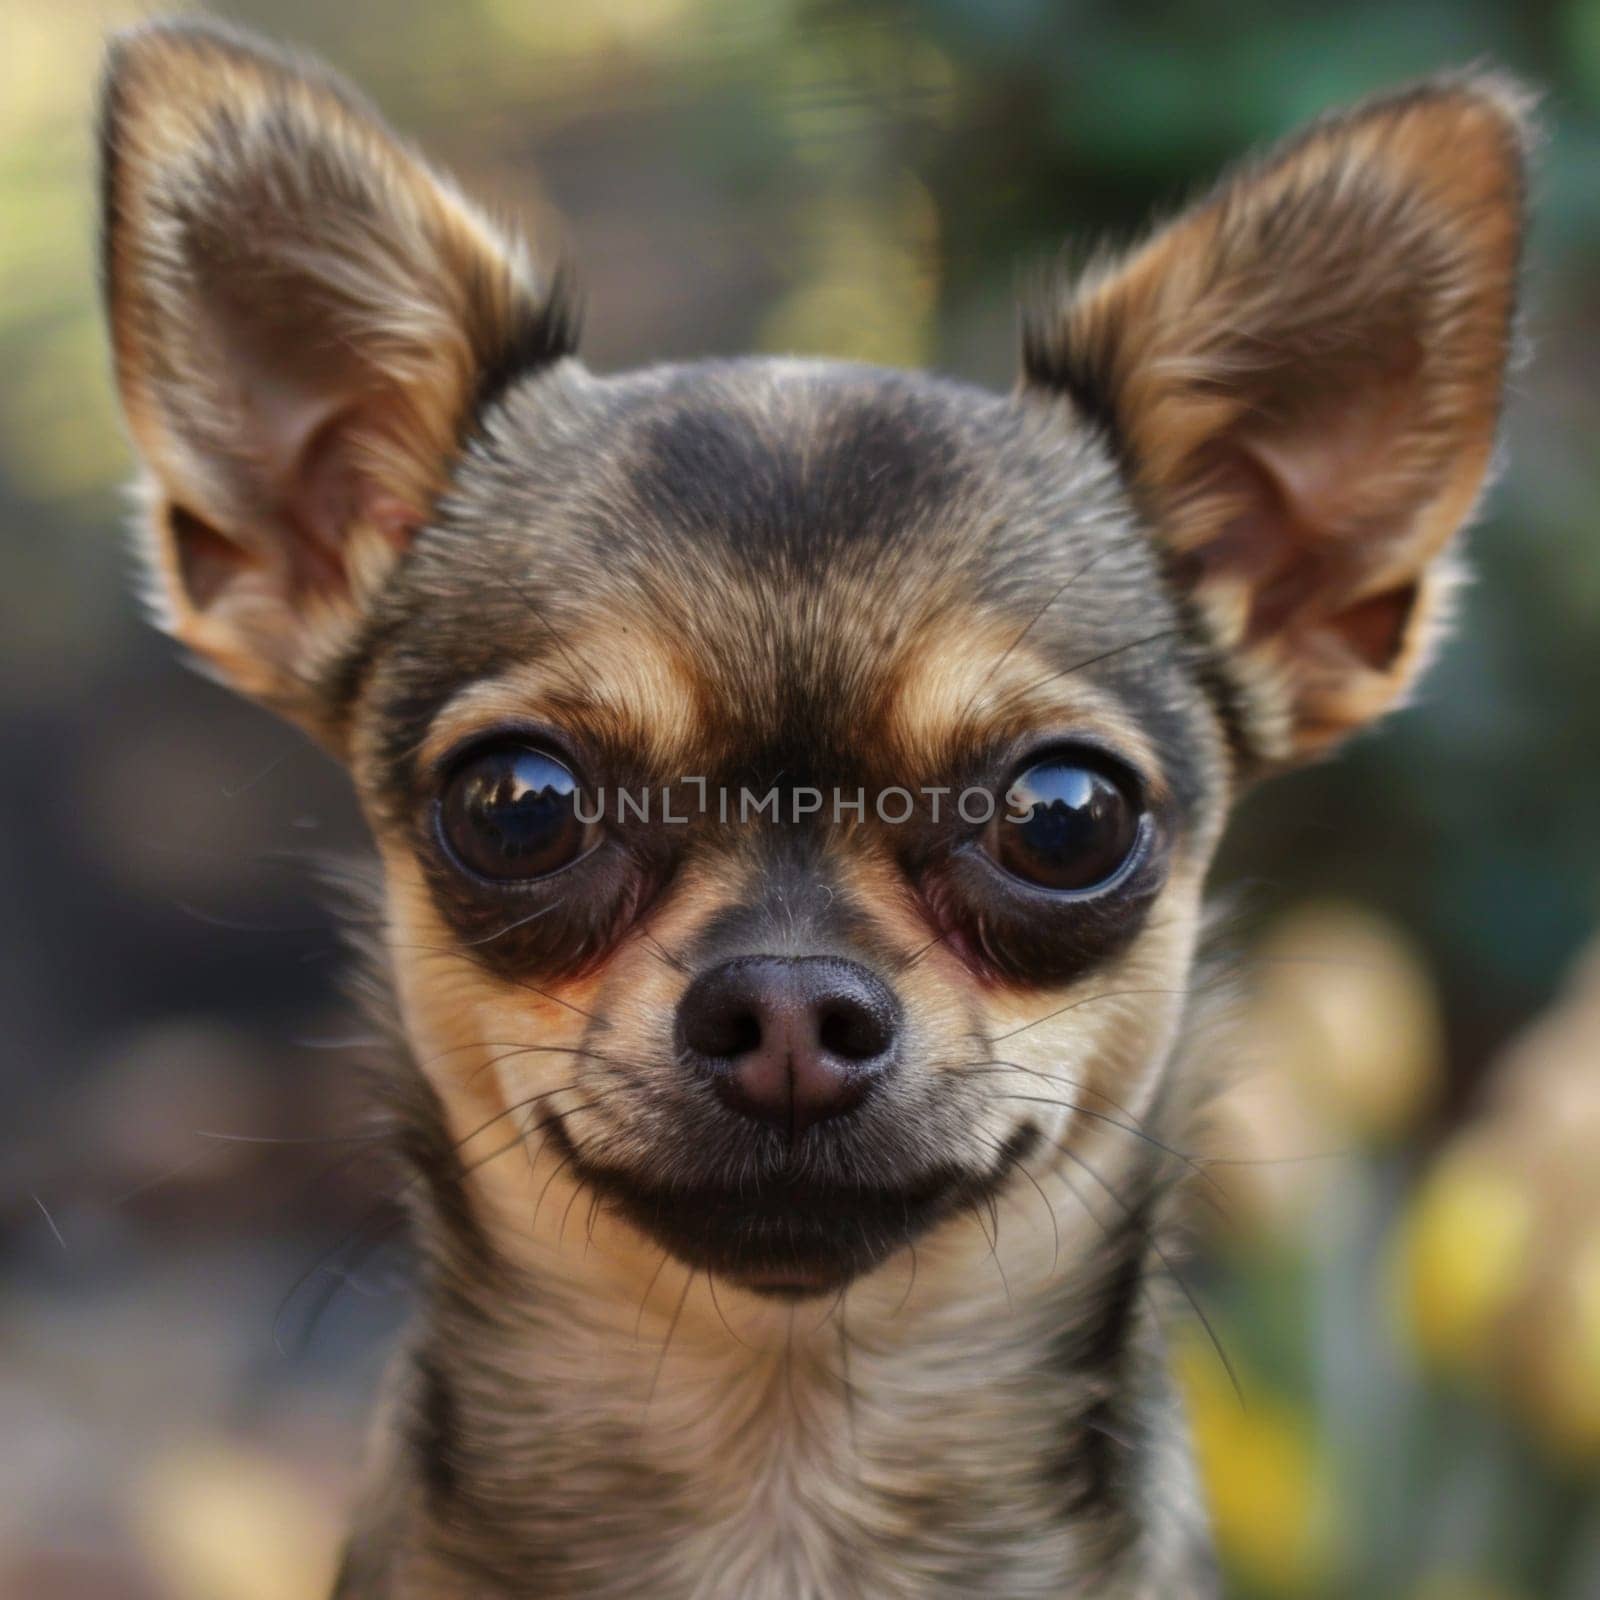 Headshot of a chihuahua dog looking at camera by papatonic